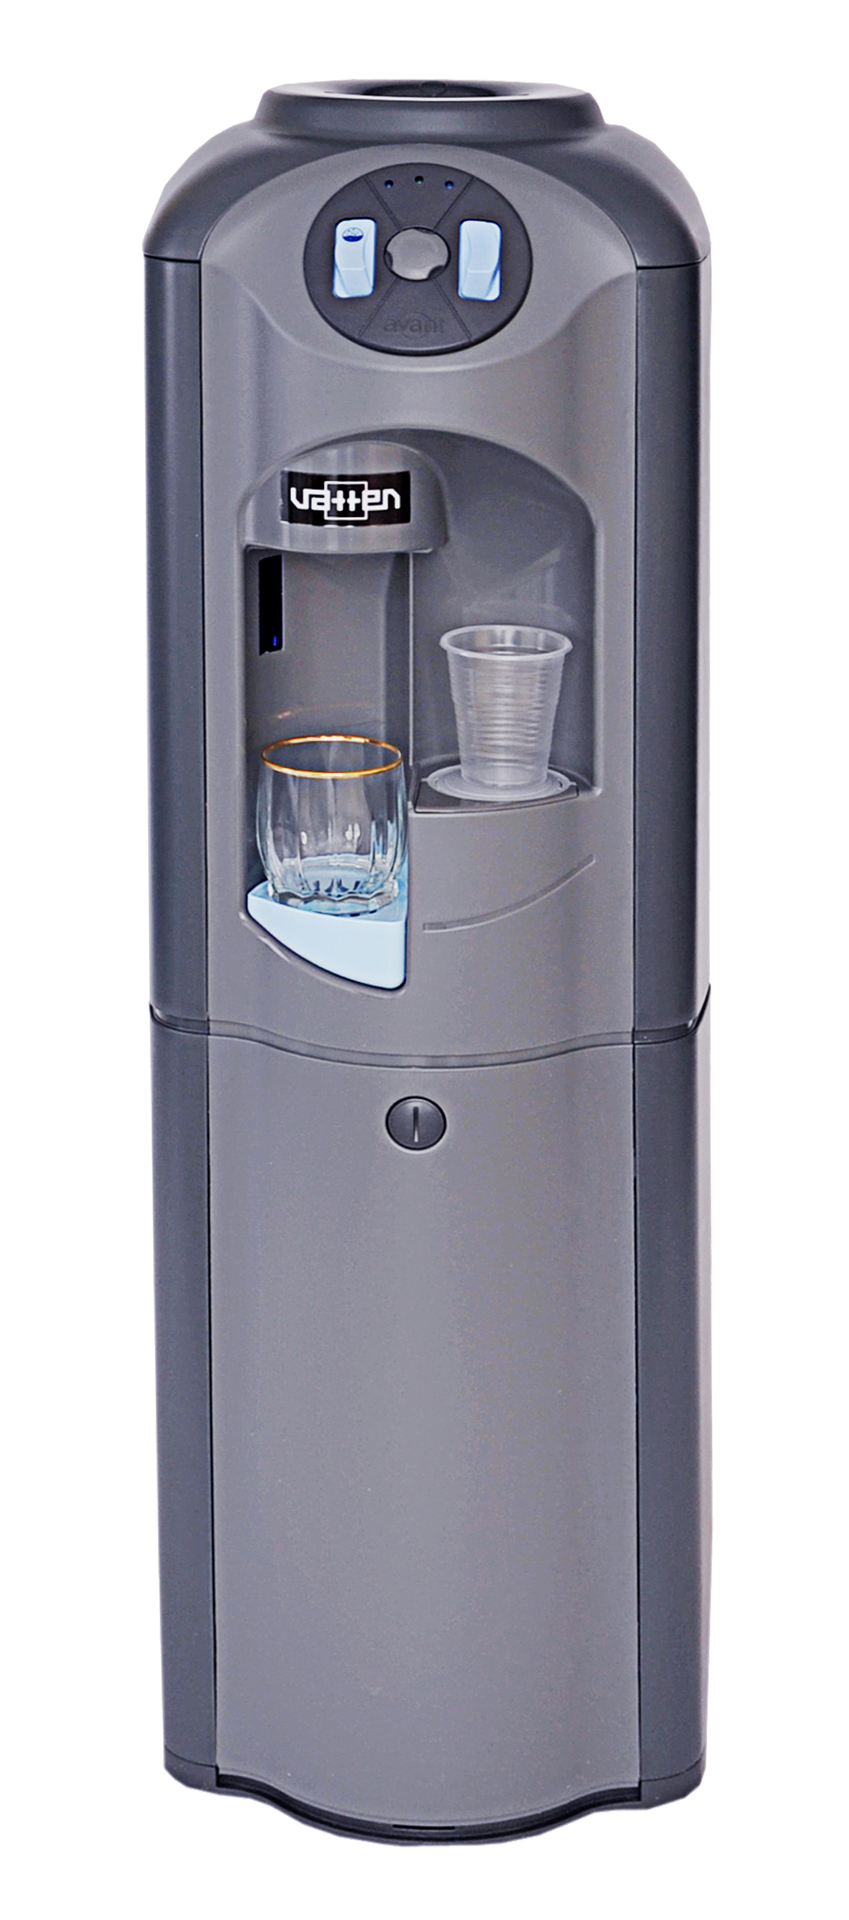 КупитьКулер для воды VATTEN V401JKHDG с газациейв интернет магазине .